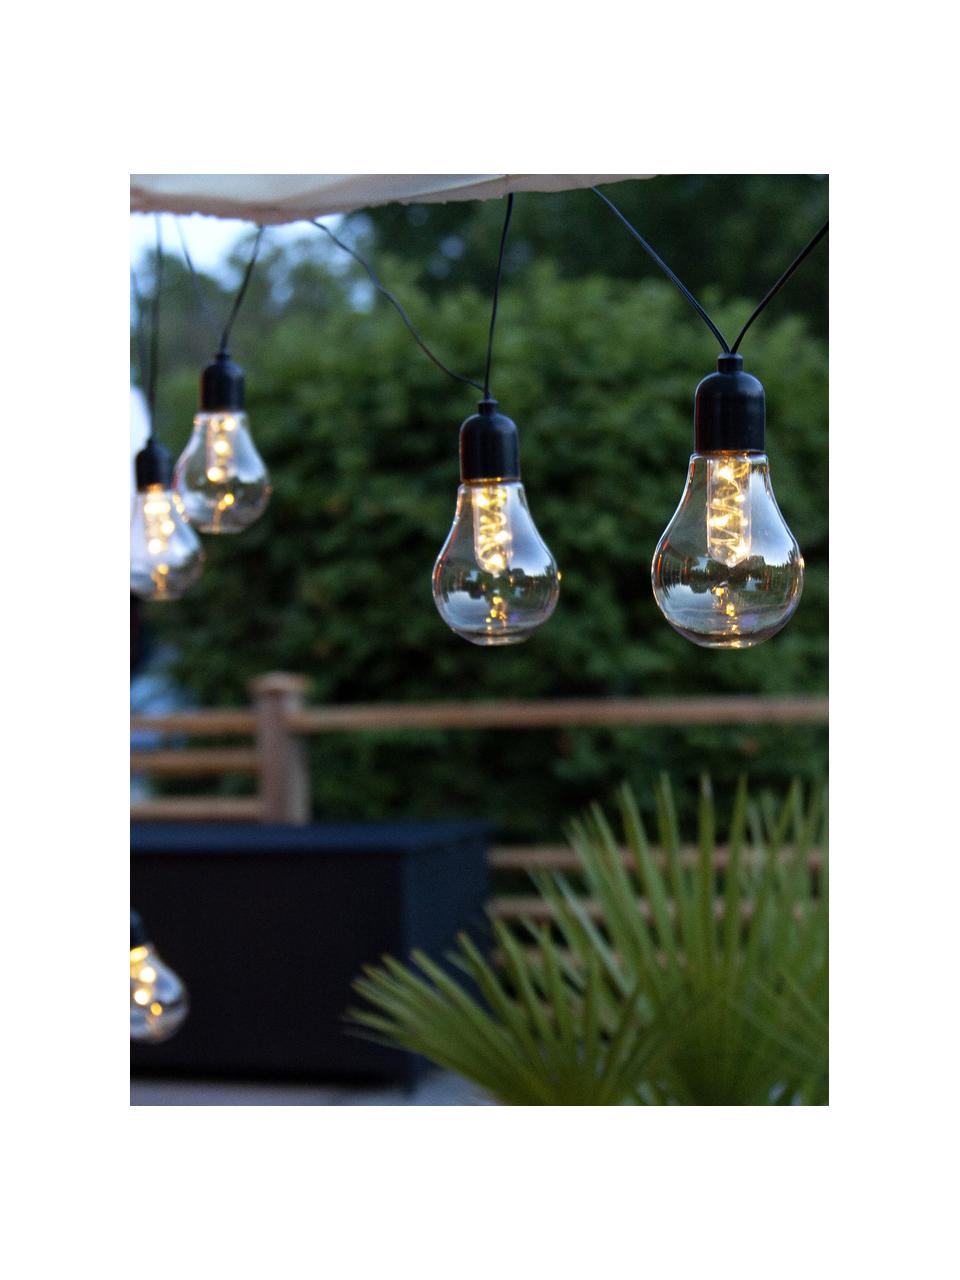 Outdoor světelný LED řetěz Glow, 505 cm, 10 lampionů, Černá, šedá, transparentní, D 505 cm